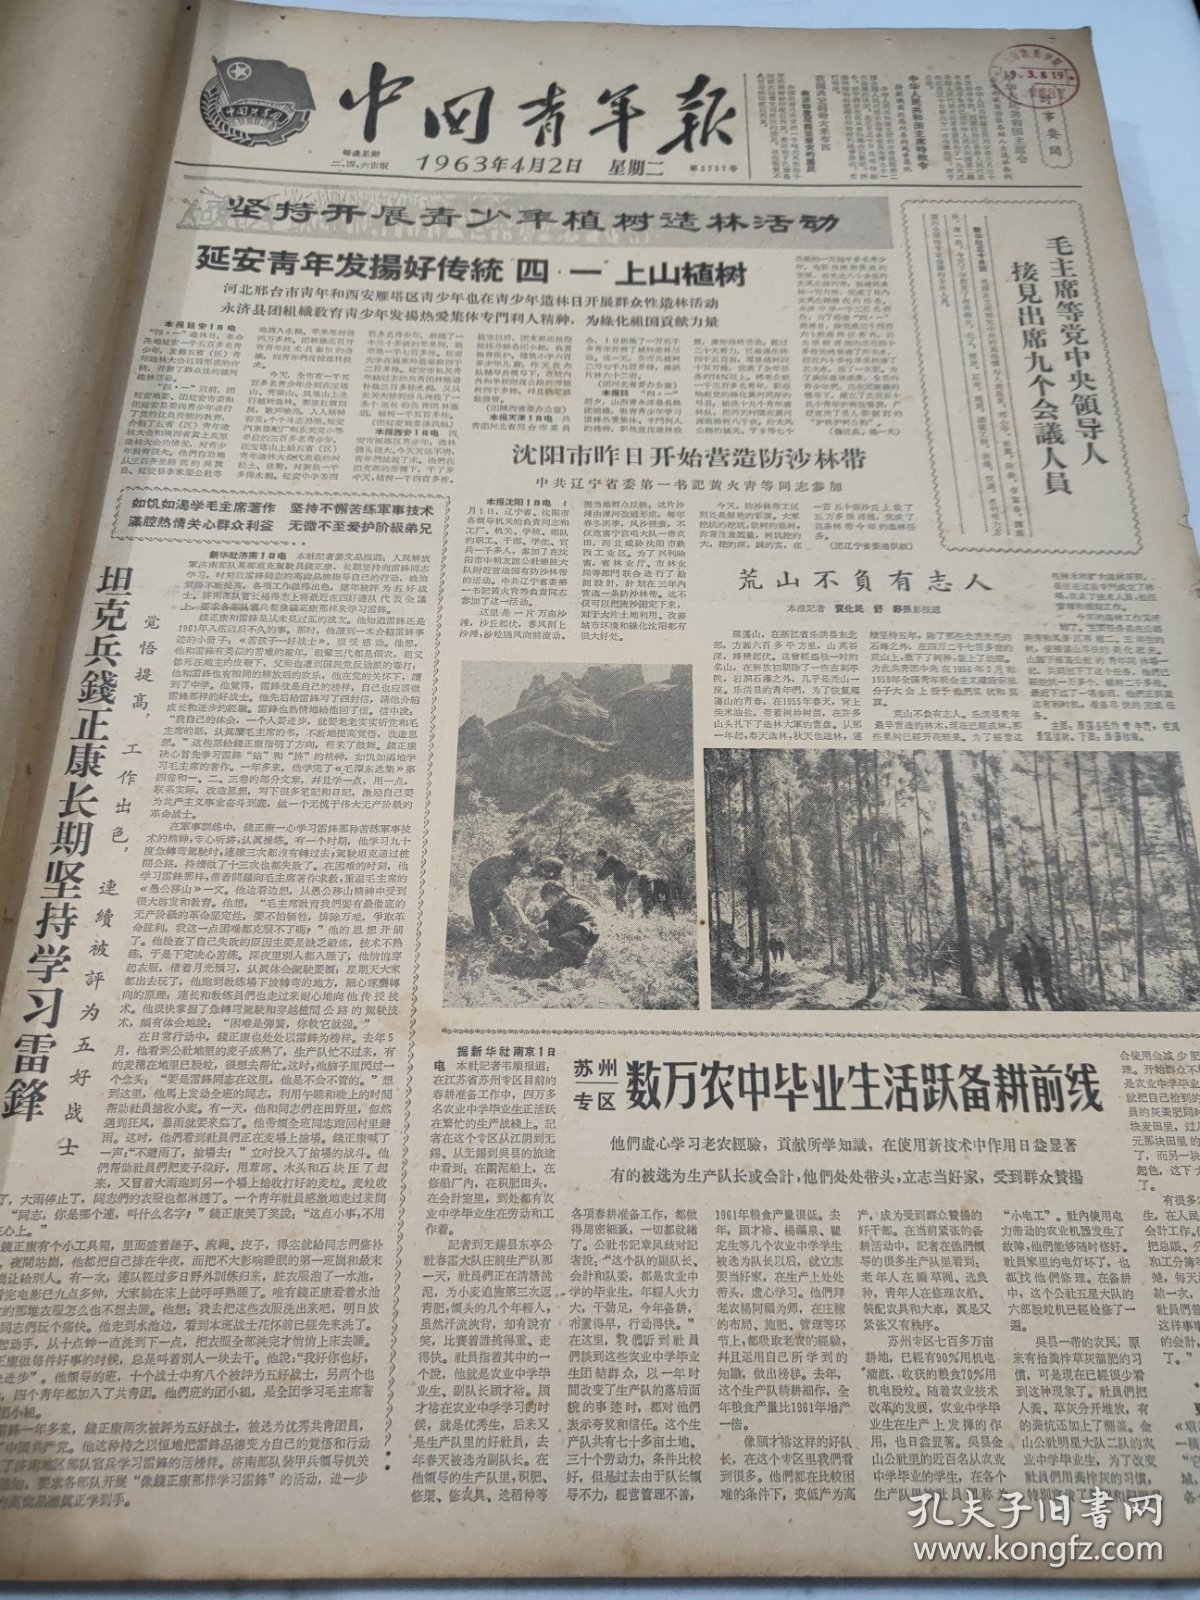 中国青年报1963年4月2日到6月29日